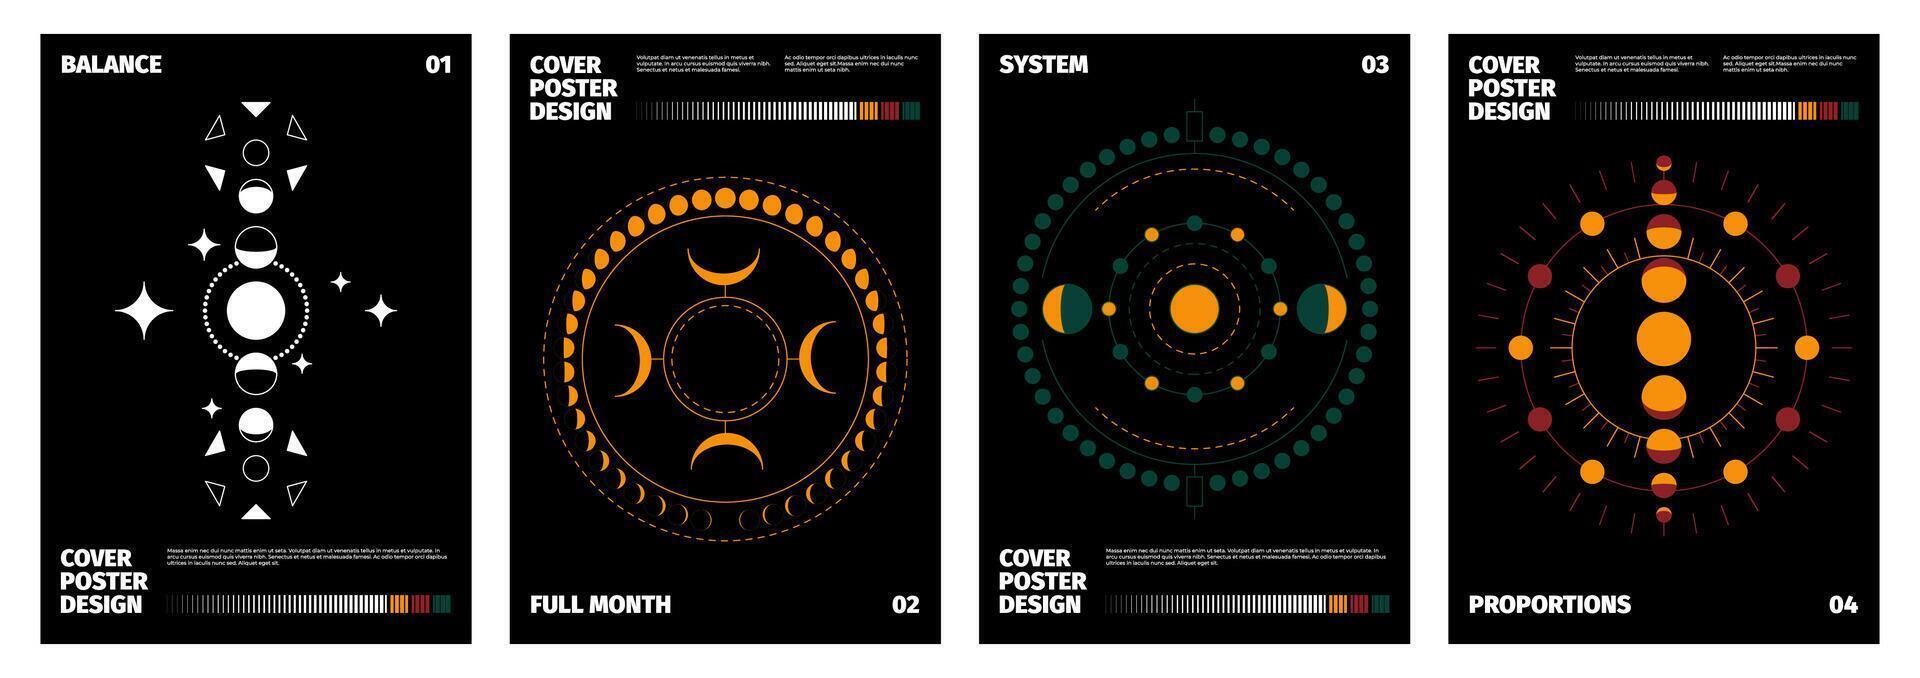 Luna etapas carteles minimalista impresión colección con resumen siluetas de Luna etapas, magia carteles con Luna creciente simbolos vector conjunto